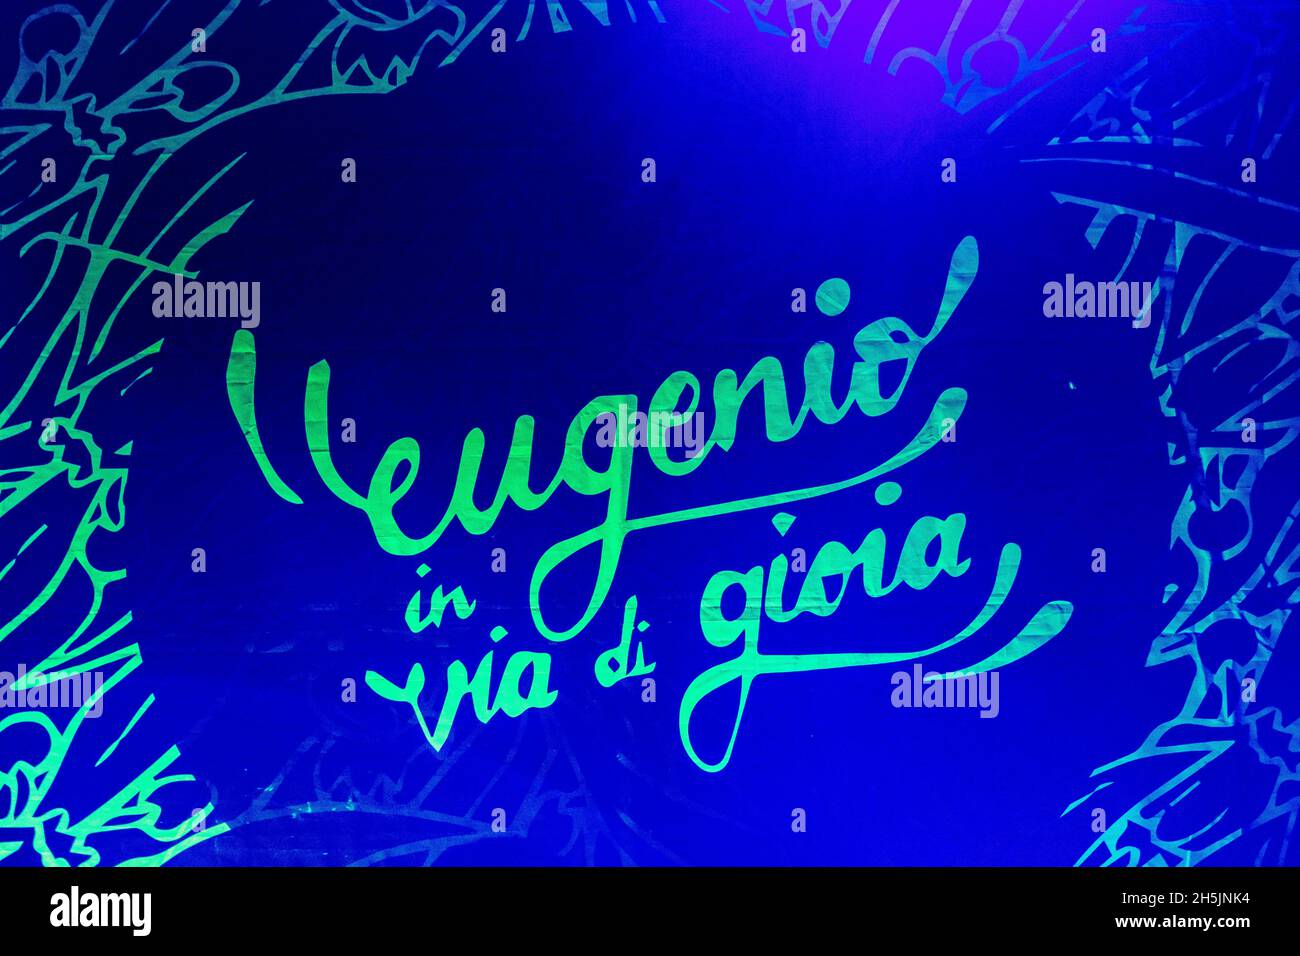 Milano Italia 09 Novembre 2021 Eugenio in Via di gioia - Musica pop italiana - live ad Alcatraz © Andrea Ripamonti / Alamy Foto Stock